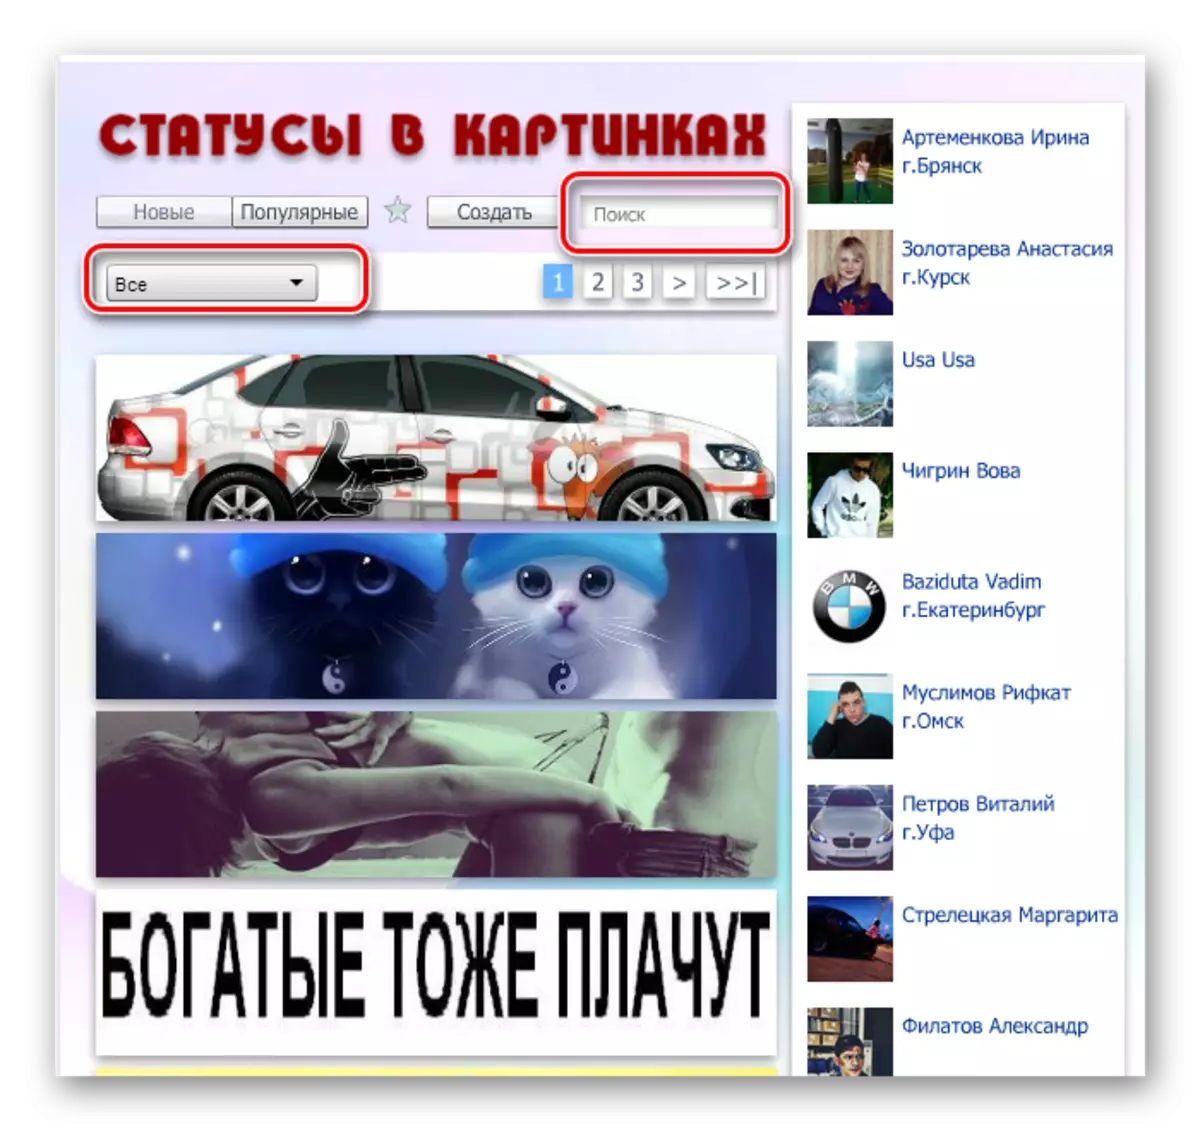 Албум Реади Маде Пхотостатус у ВКонтакте